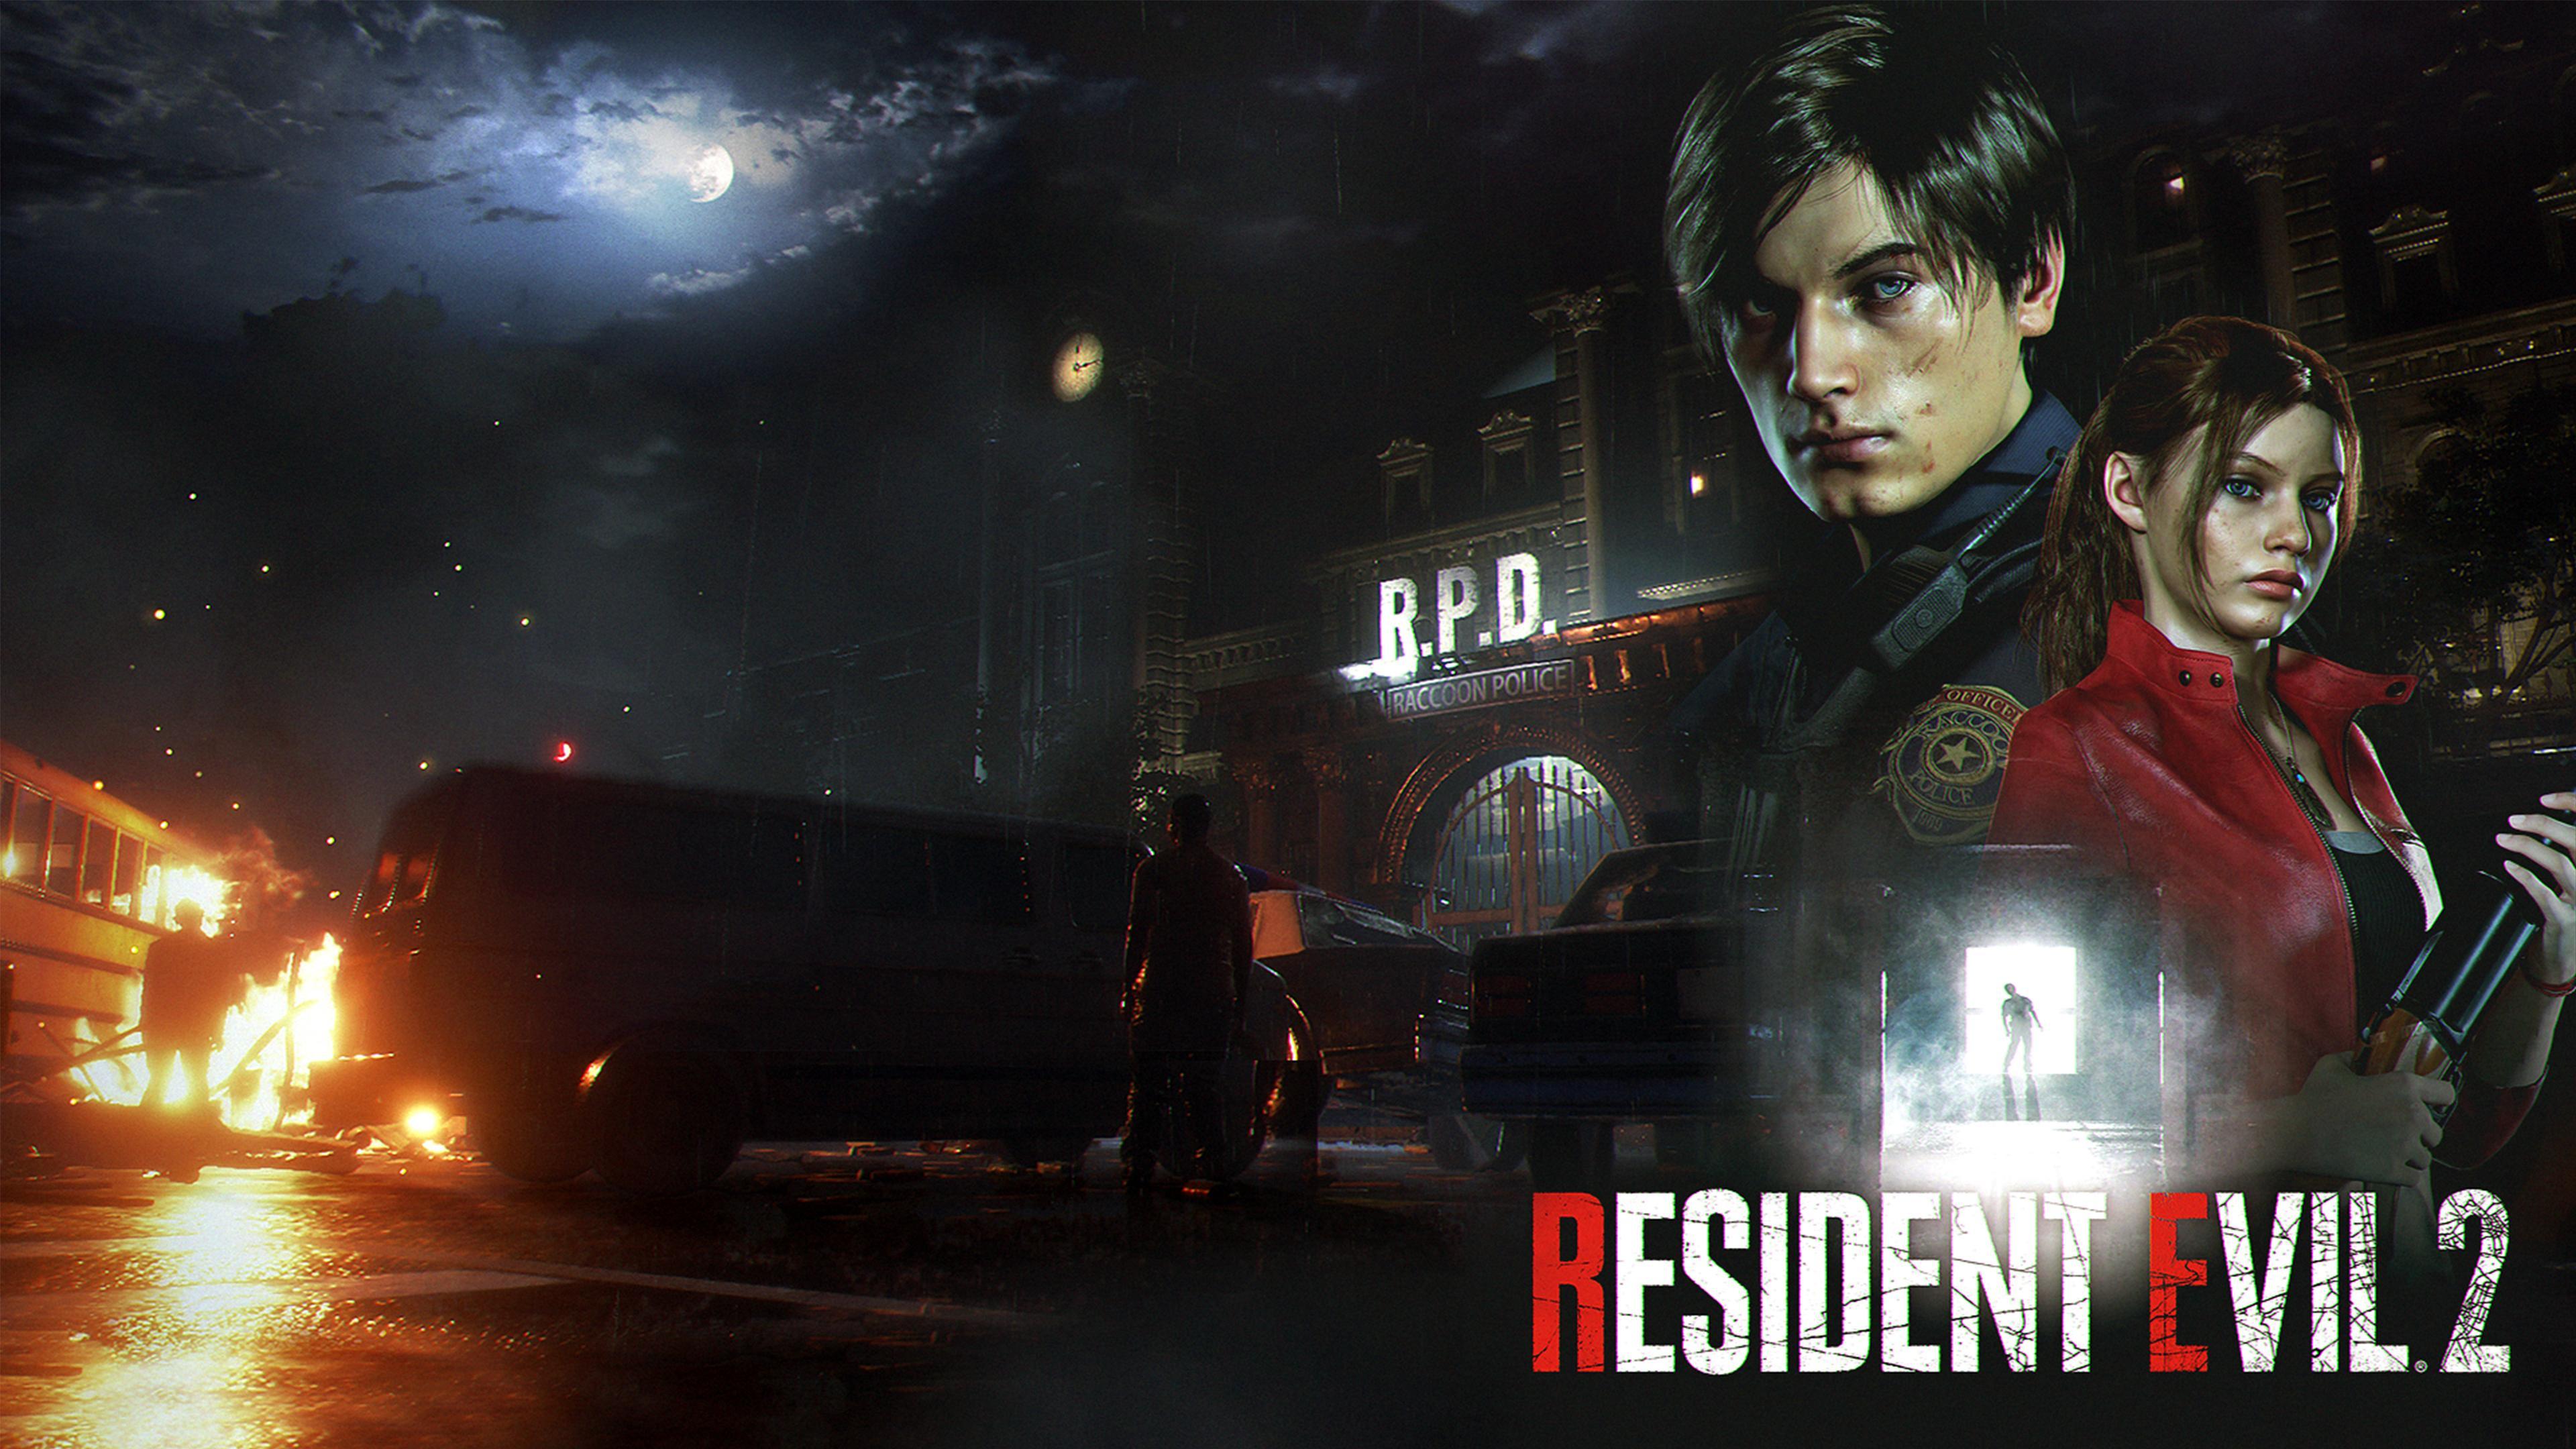 Resident Evil 2 (2019) 4k Ultra HD Wallpaper. Background